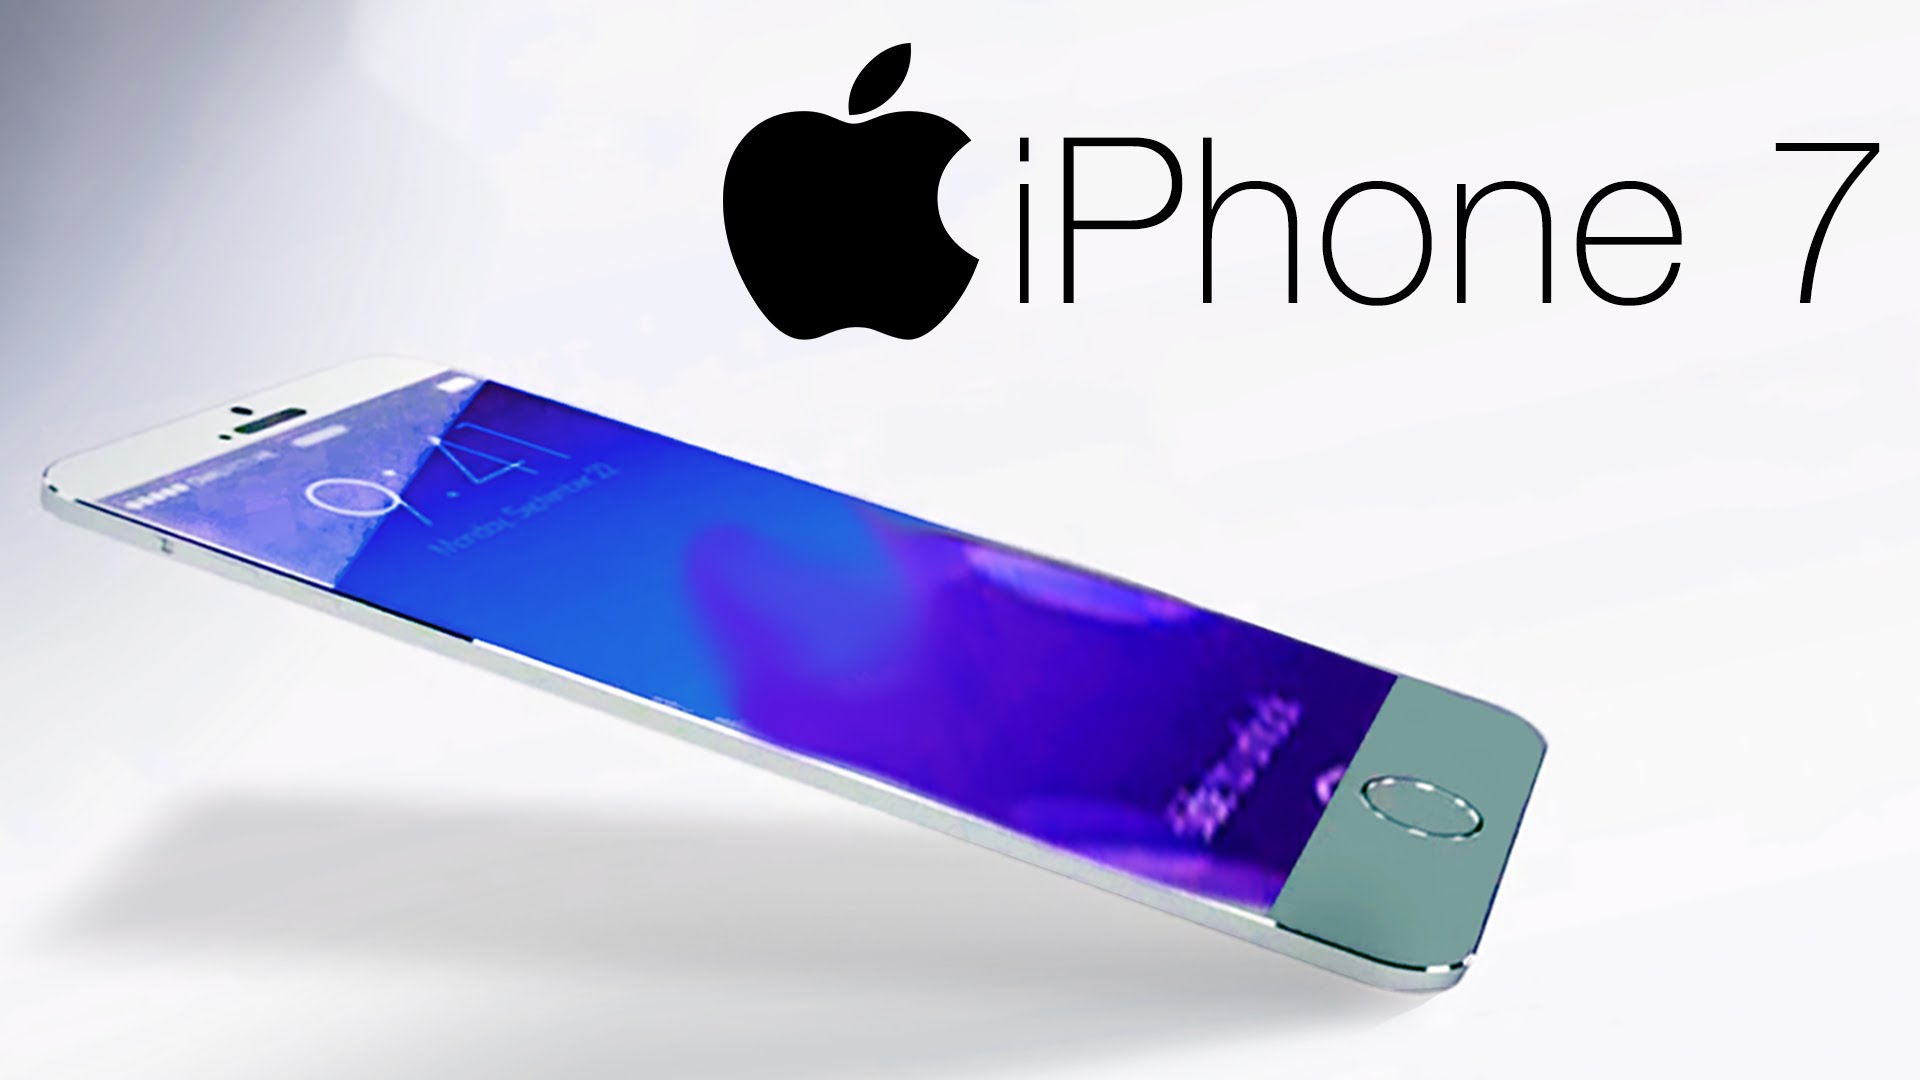 Tiên đoán giá iPhone 7 giá bao nhiêu khi ra mắt chính thức?